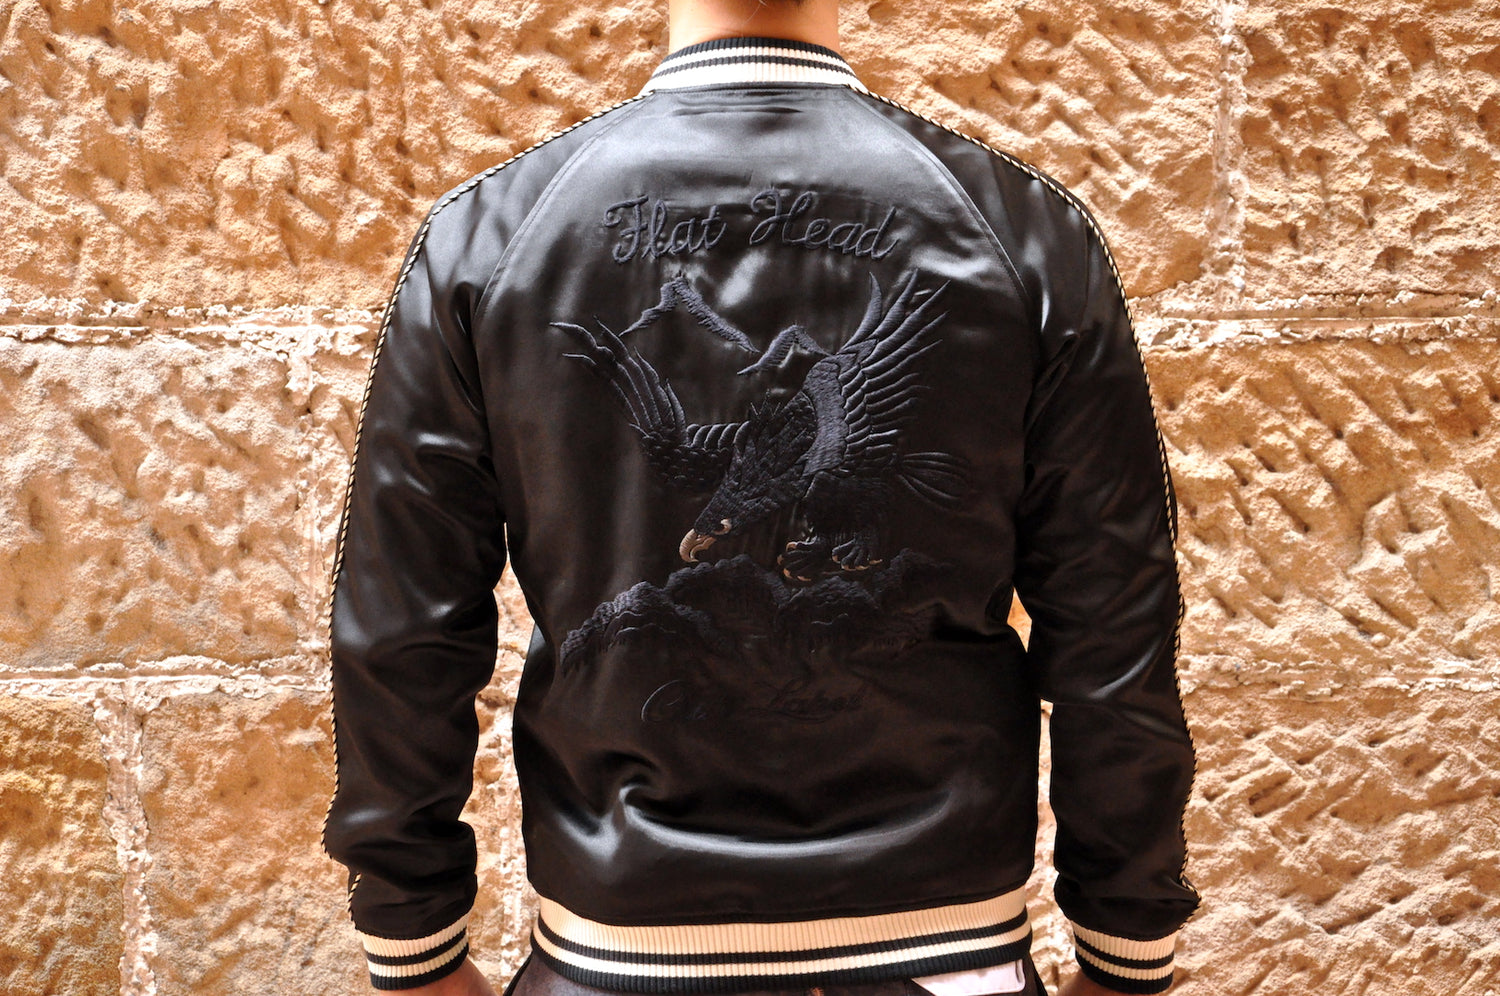 The Flat Head ‘Black Eagle’ Souvenir Jacket